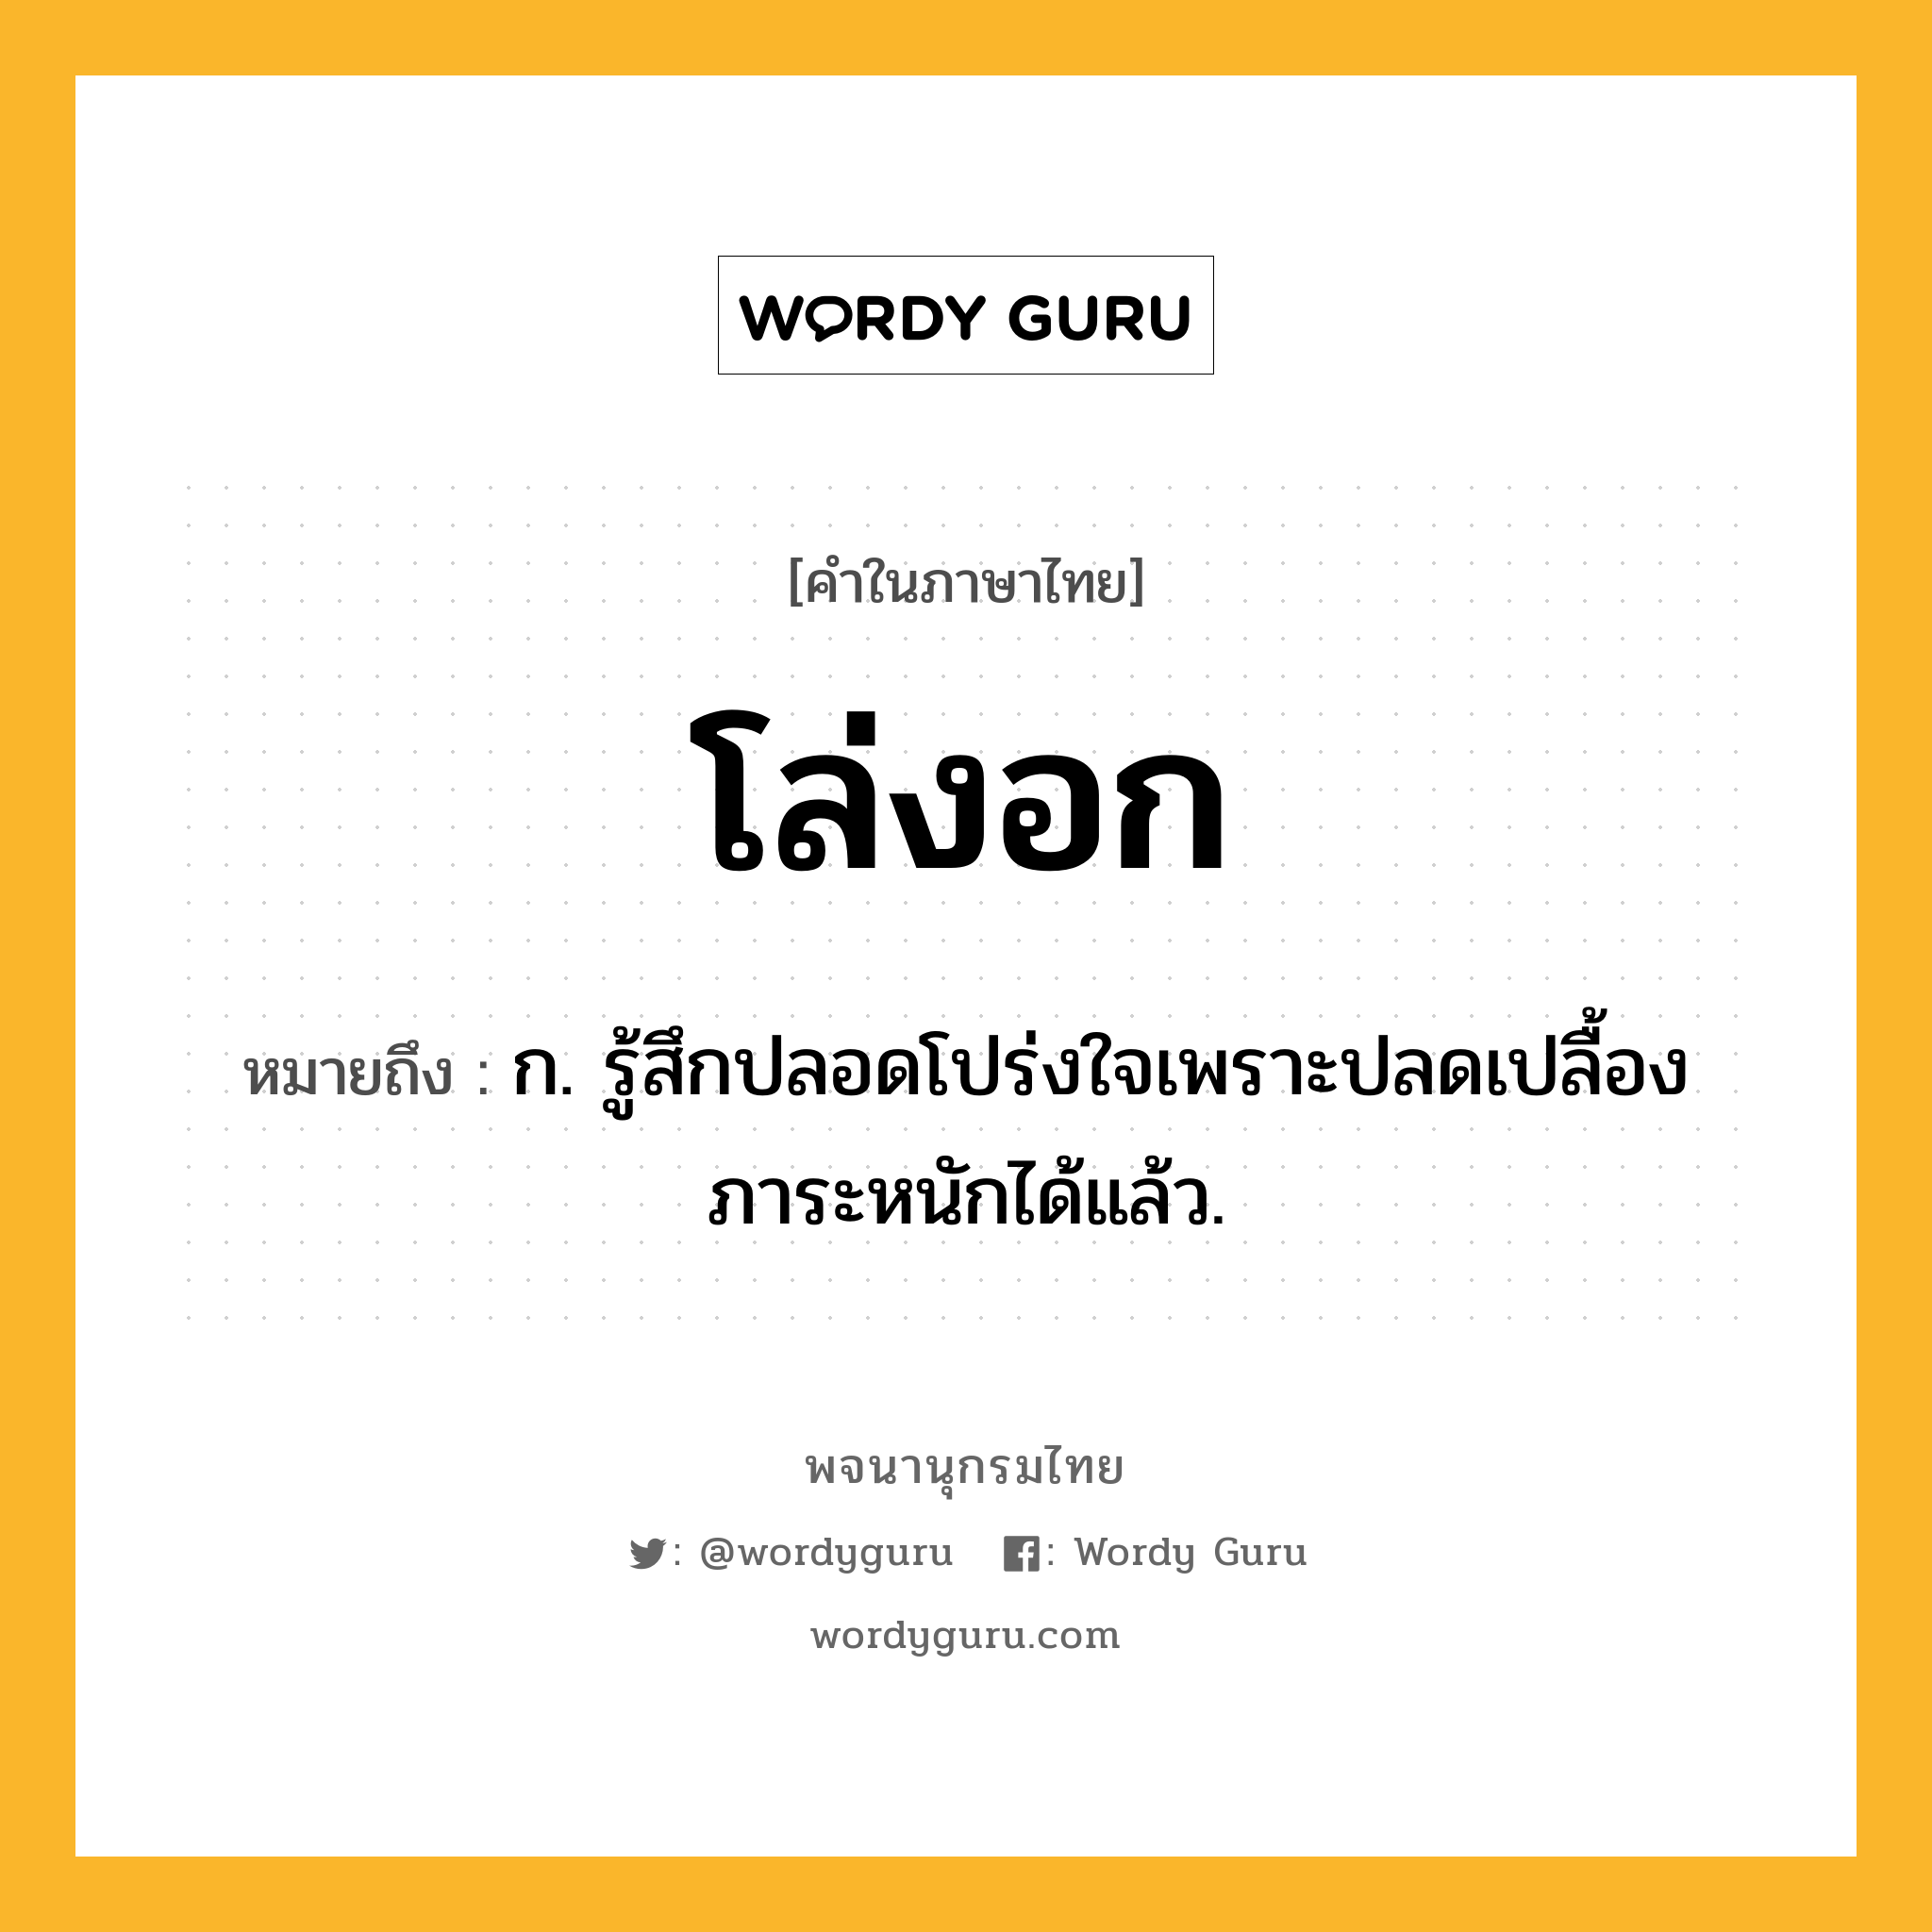 โล่งอก ความหมาย หมายถึงอะไร?, คำในภาษาไทย โล่งอก หมายถึง ก. รู้สึกปลอดโปร่งใจเพราะปลดเปลื้องภาระหนักได้แล้ว.